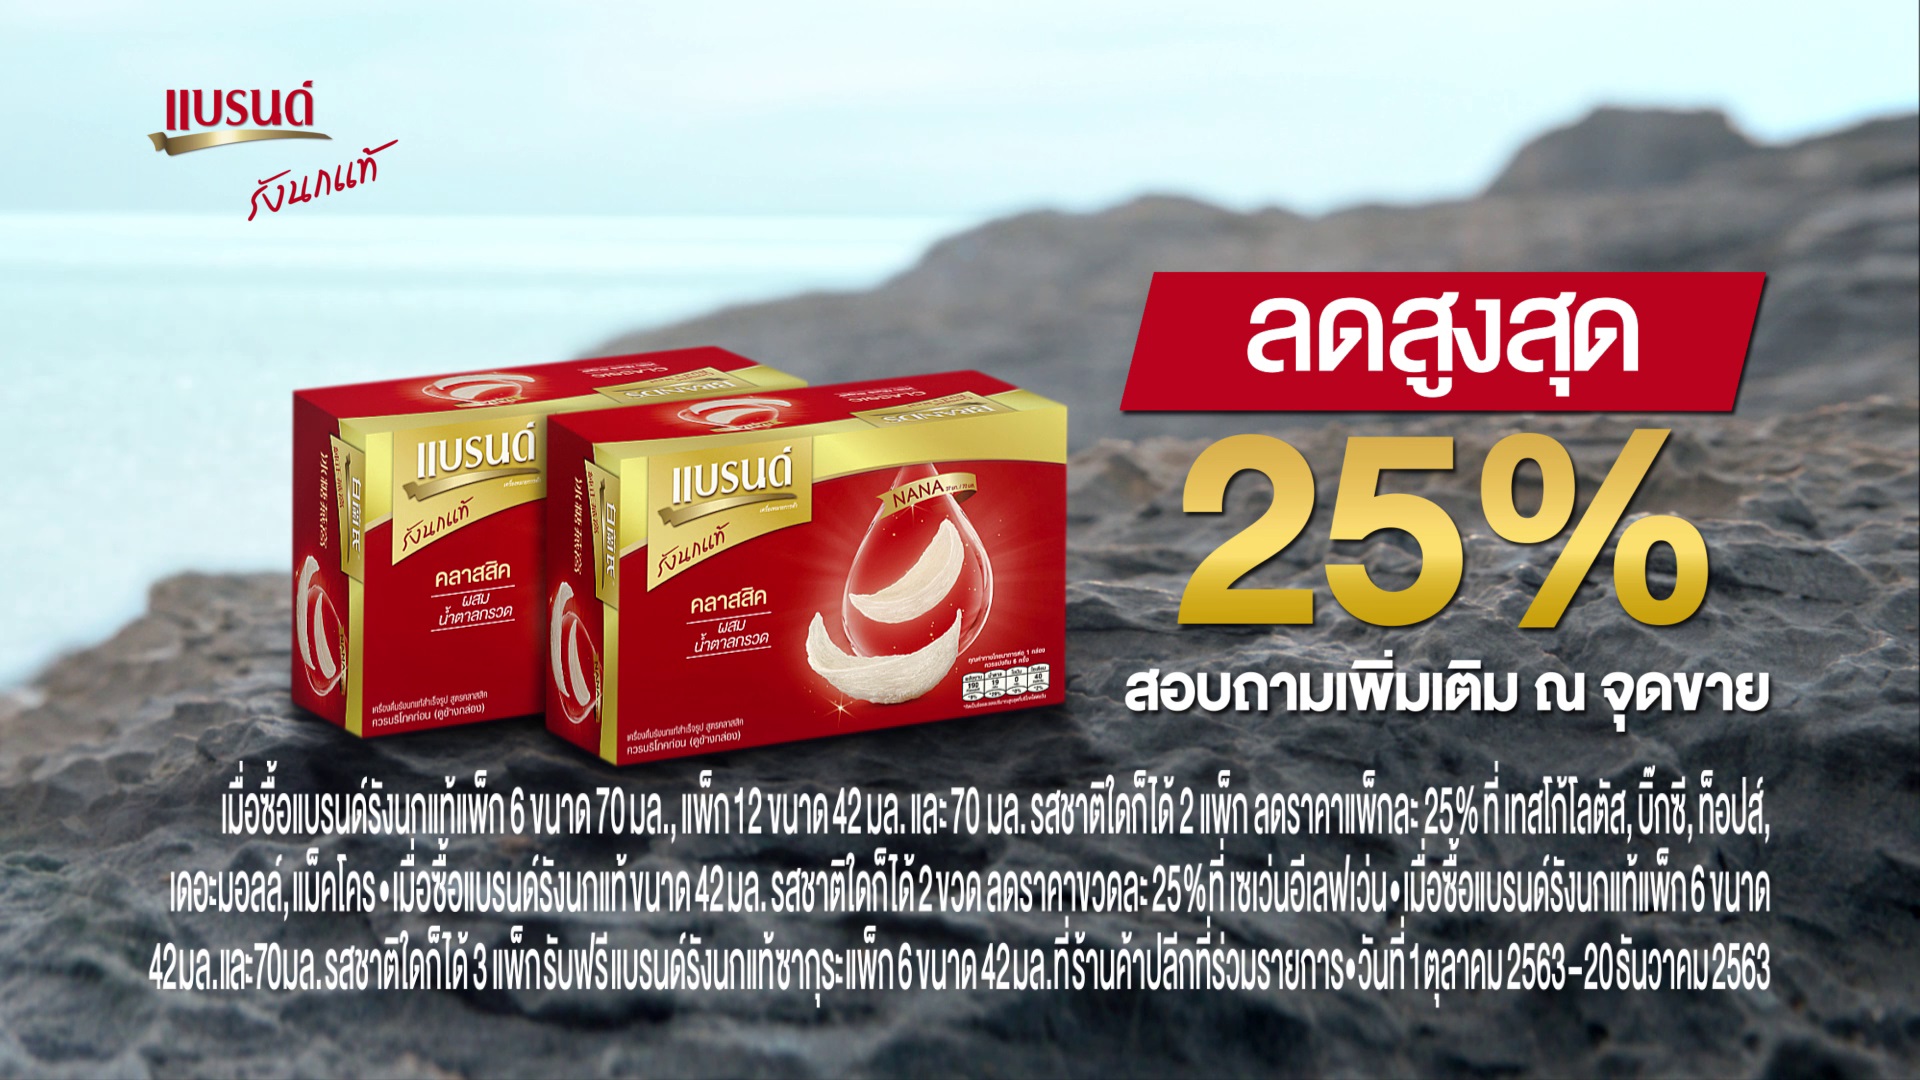 แบรนด์ซันโทรี่ แนะนำ 'แบรนด์รังนกแท้ โฉมใหม่ พร้อมชูจุดเด่นเป็นเครื่องดื่มรังนกแท้รายแรกในไทยที่มี 'NANA (นานะ) ทุกขวด